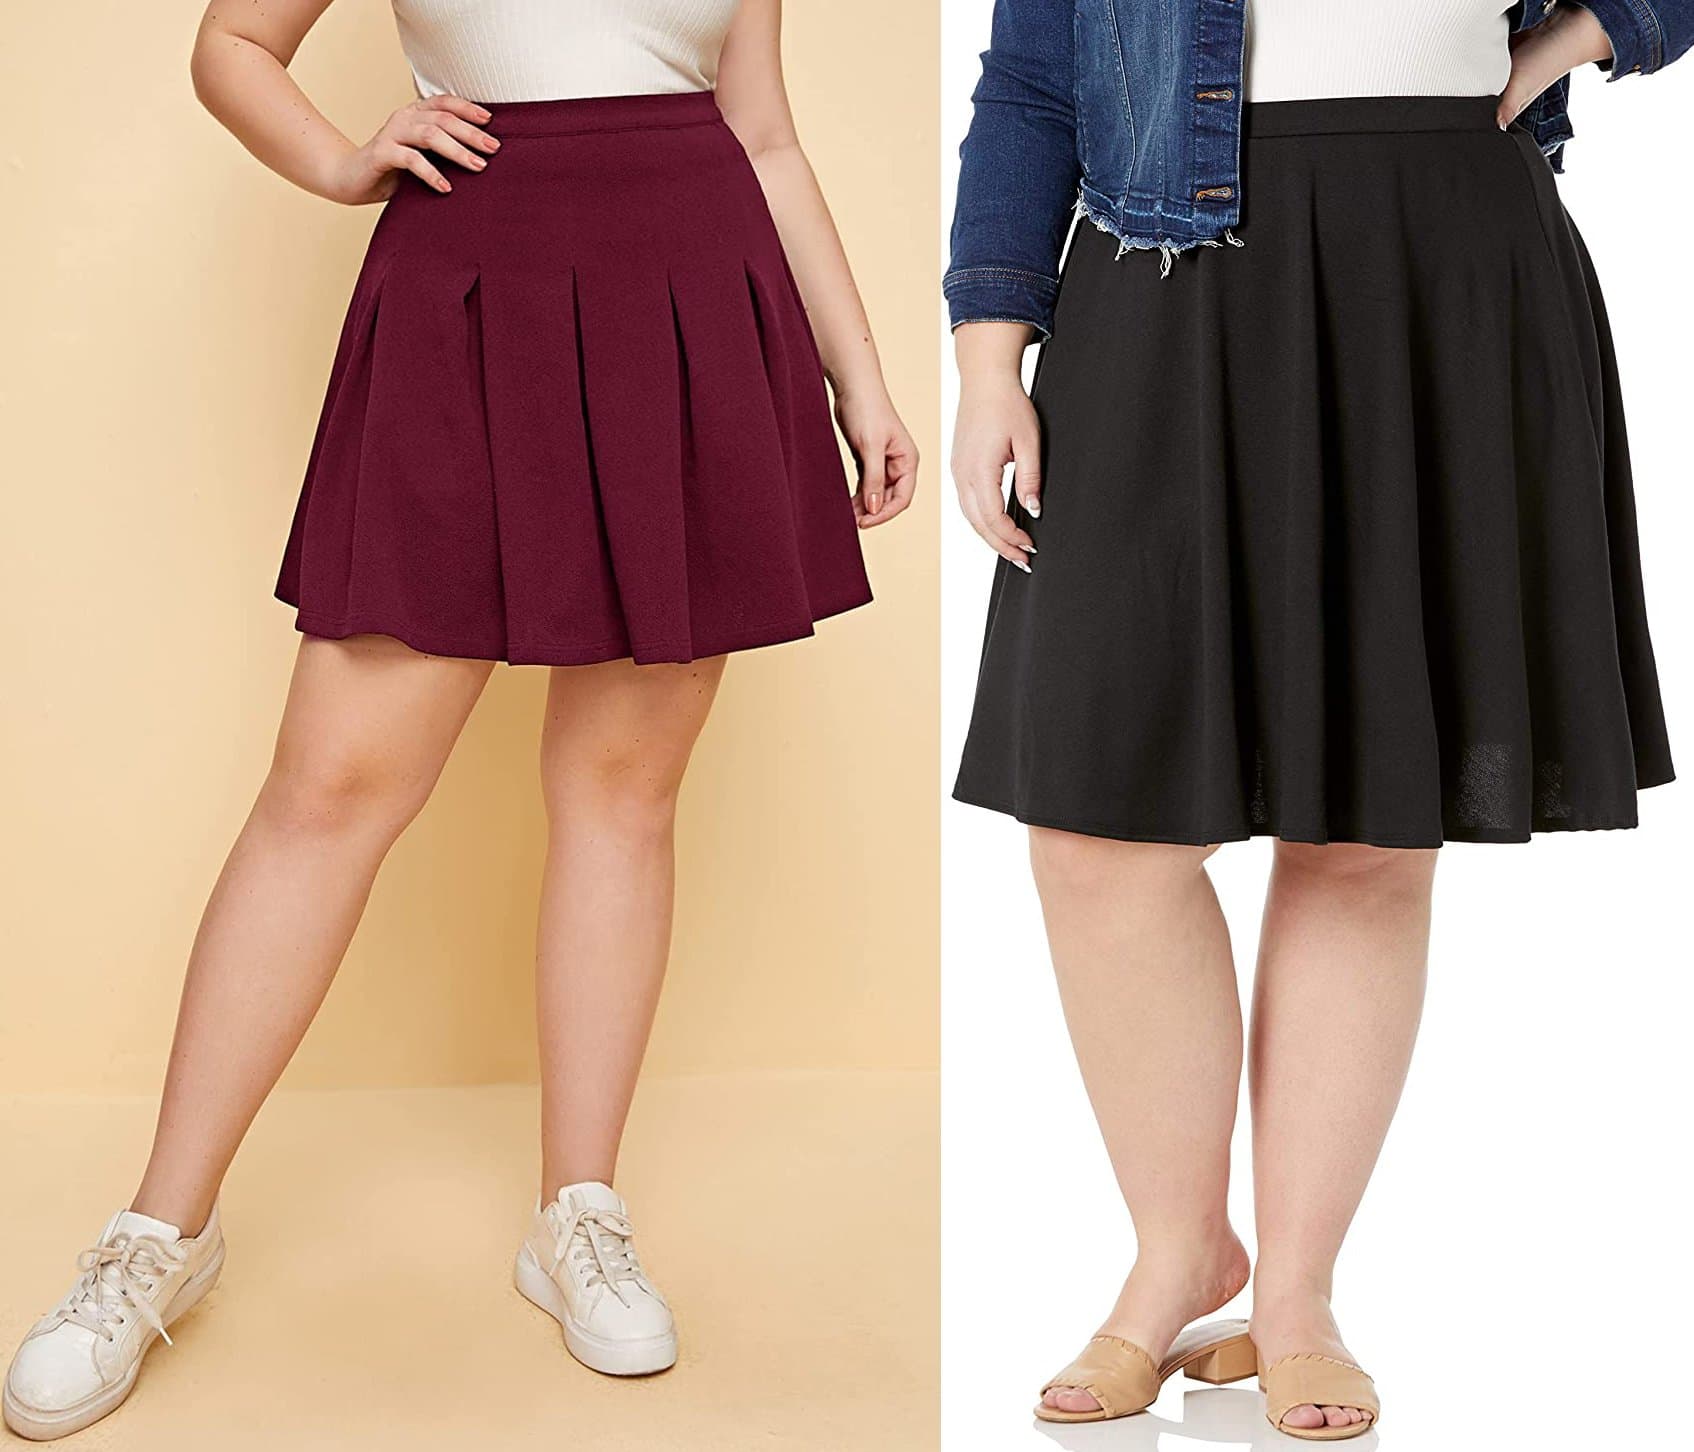 Romwe Women's Plus Size Basic Stretchy Skater Skirt; Star Vixen Women's Plus-Size Knee Length Full Skater Skirt